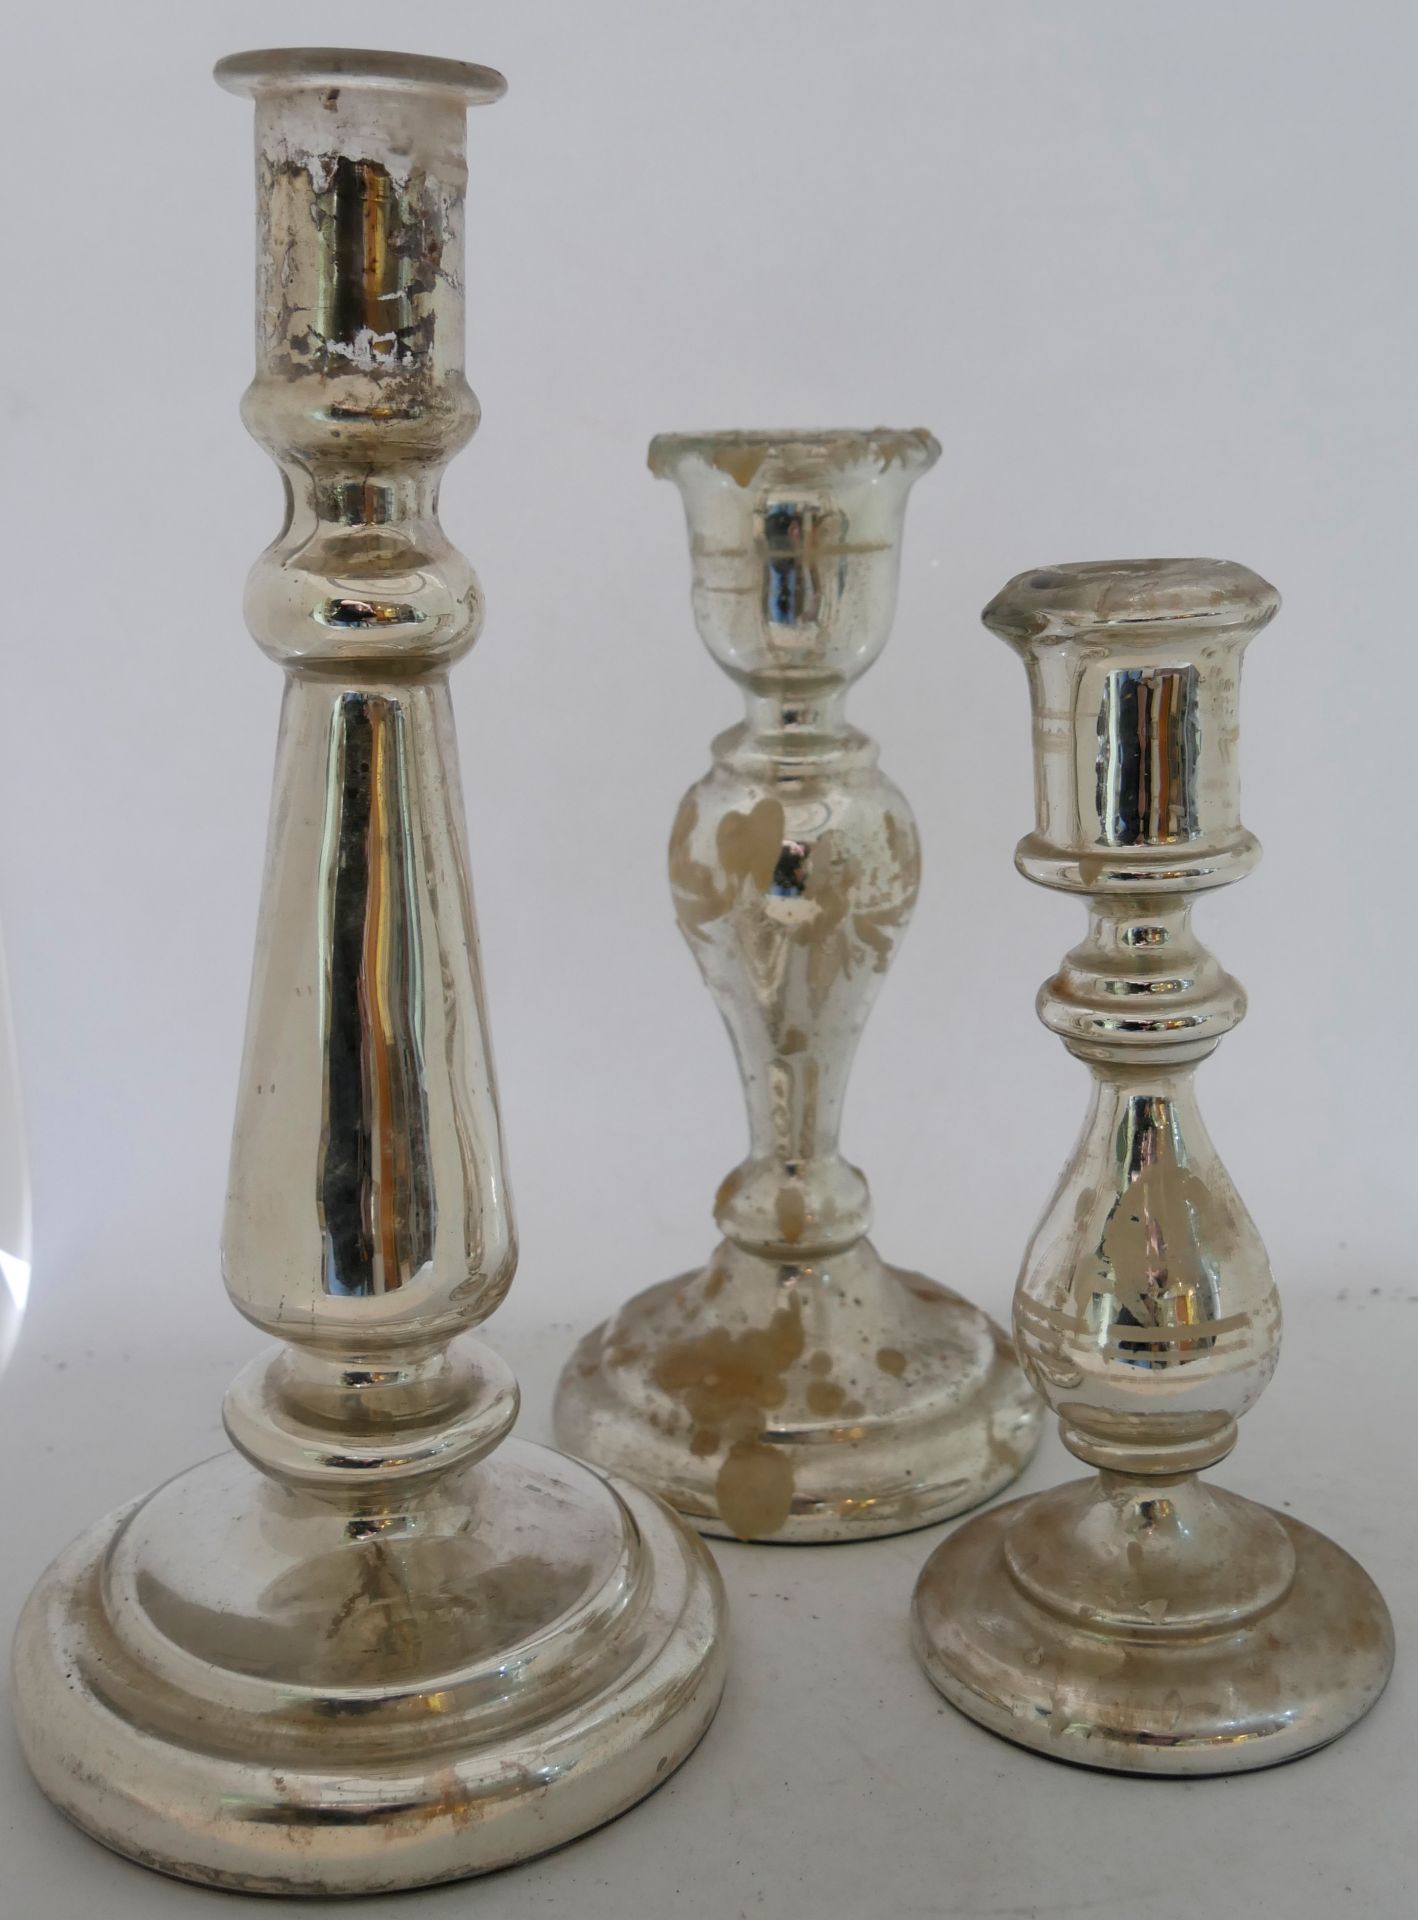 Aus Sammlung - 3 antike Kerzenleuchter aus Bauernsilber, Bemalung teilweise noch vorhanden, mit